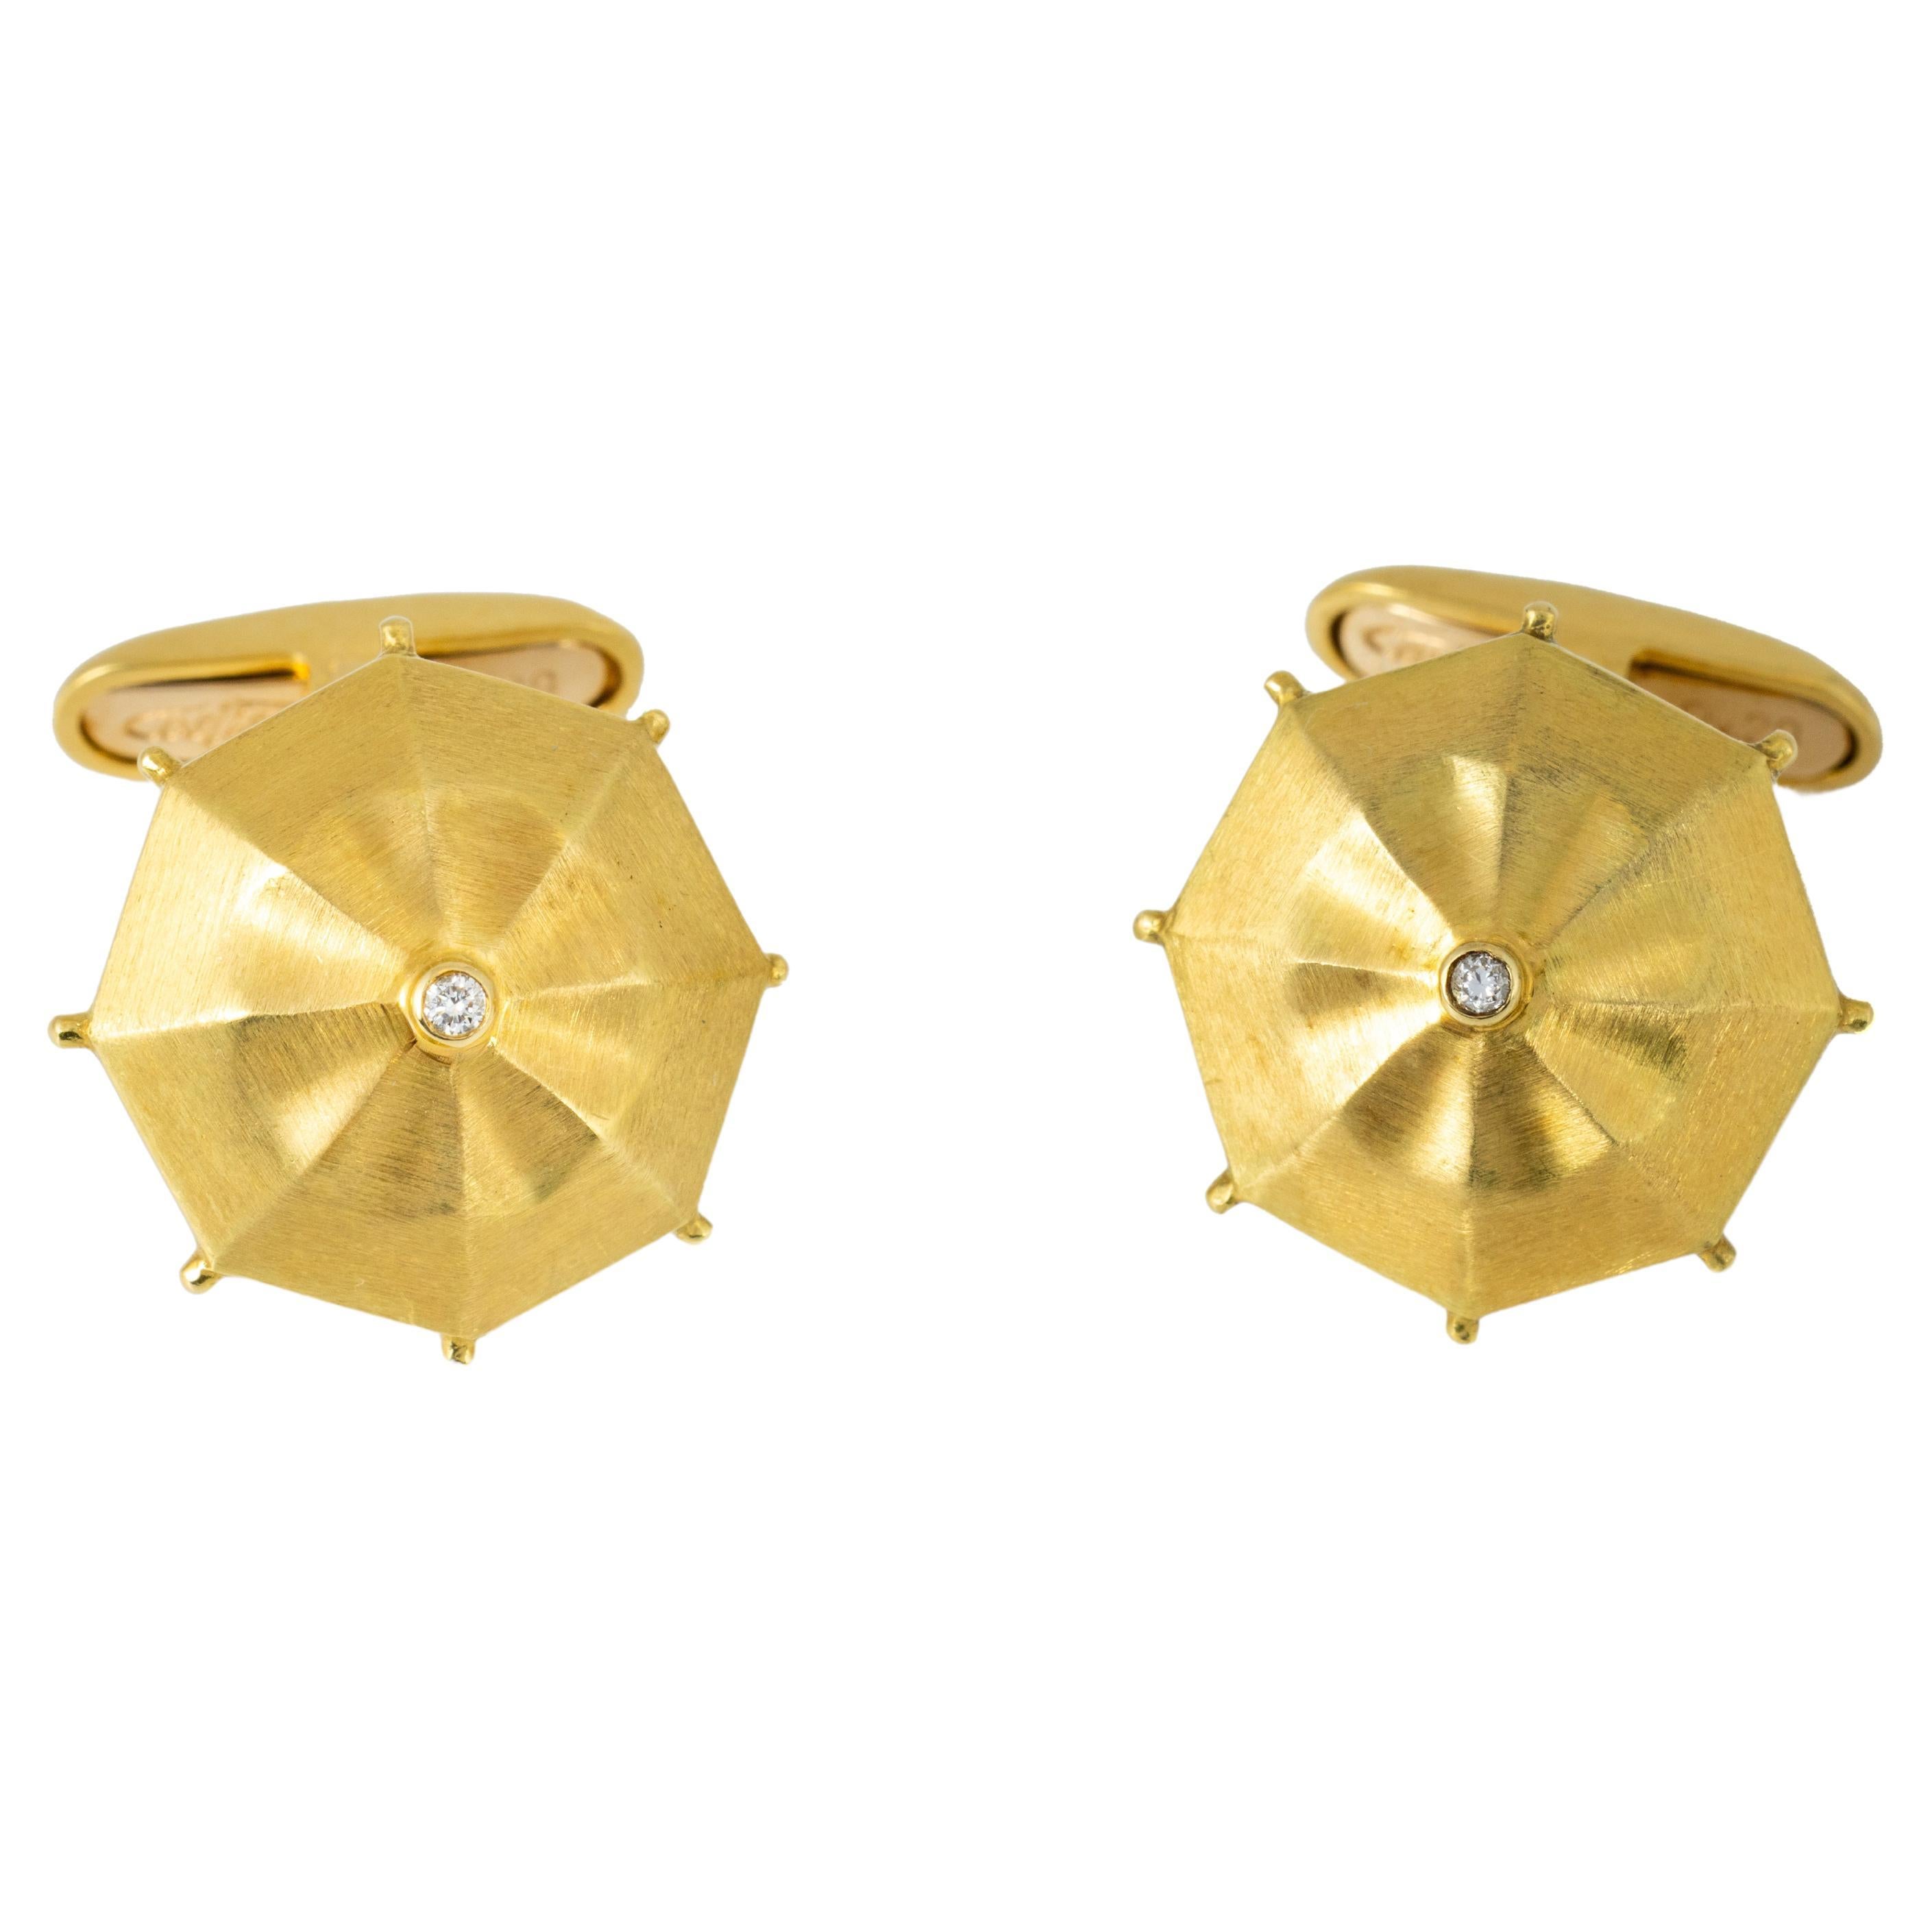 Boutons de manchette "Costis" Umbrella Collection YG avec 0,04 carats de diamant au centre